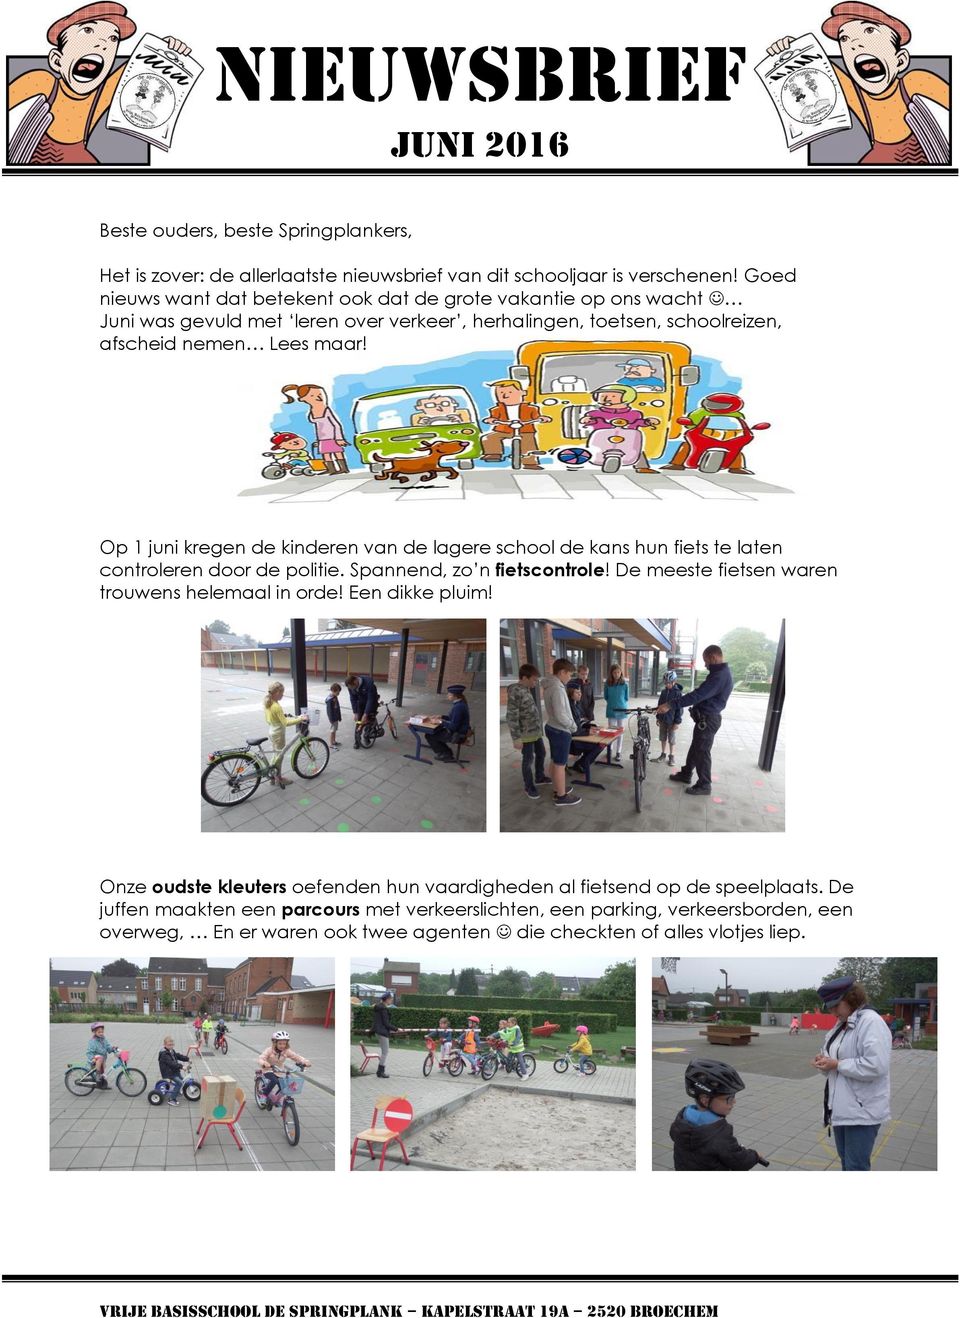 Op 1 juni kregen de kinderen van de lagere school de kans hun fiets te laten controleren door de politie. Spannend, zo n fietscontrole! De meeste fietsen waren trouwens helemaal in orde!